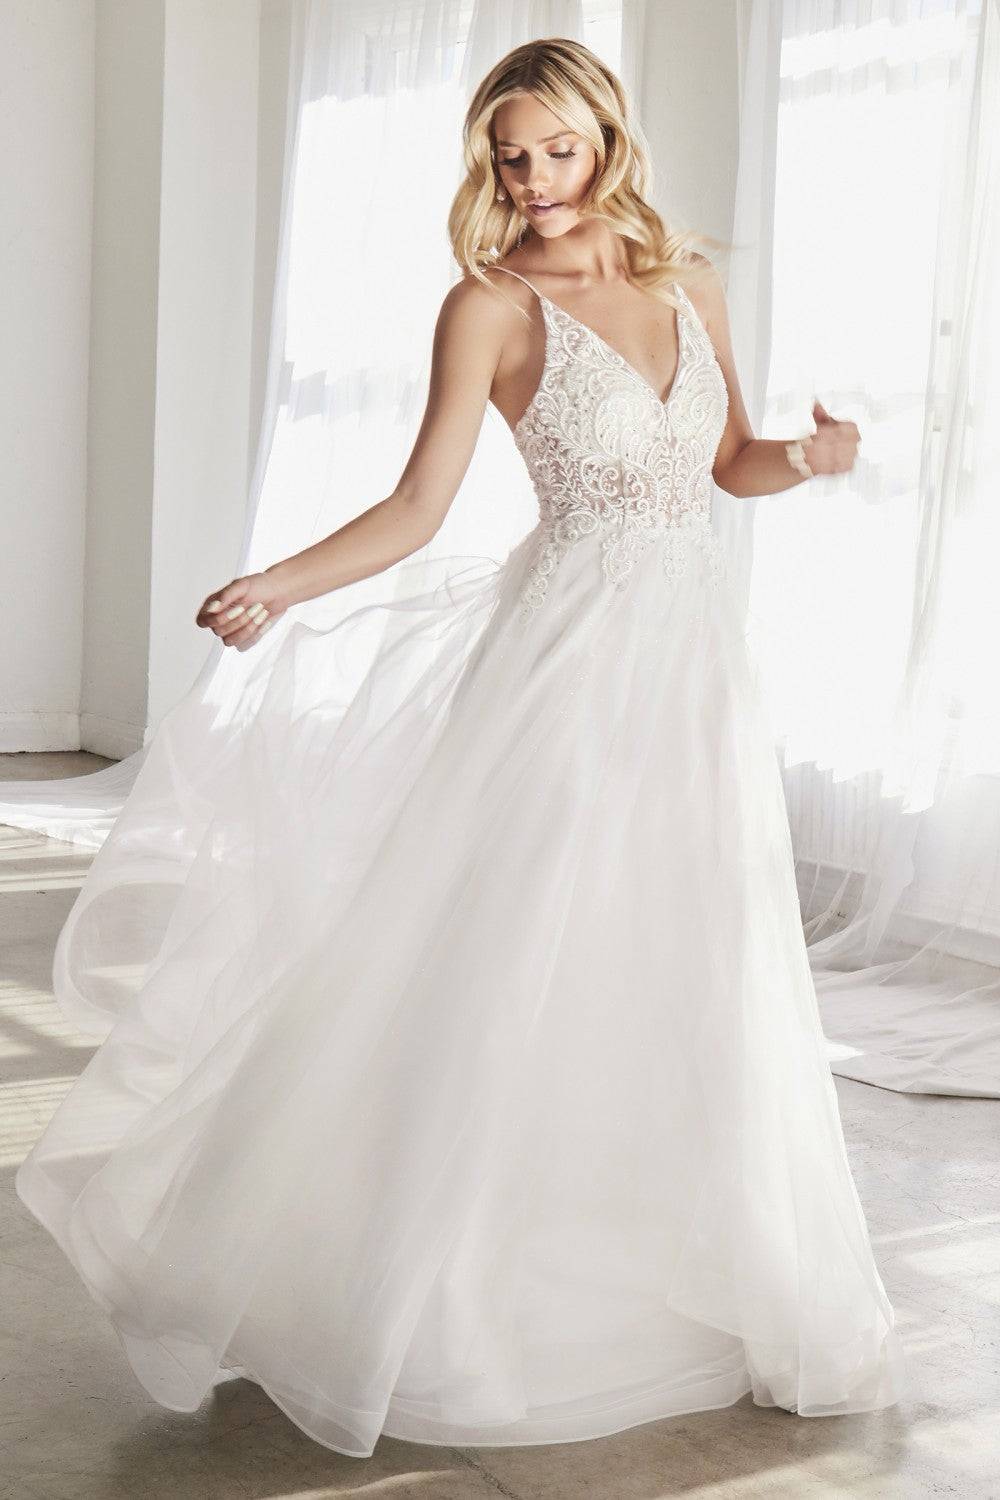 Leesa Sheer Bodice with Full Skirt Wedding Gown 740897XR-SoftWhite SAMPLE IN STORE